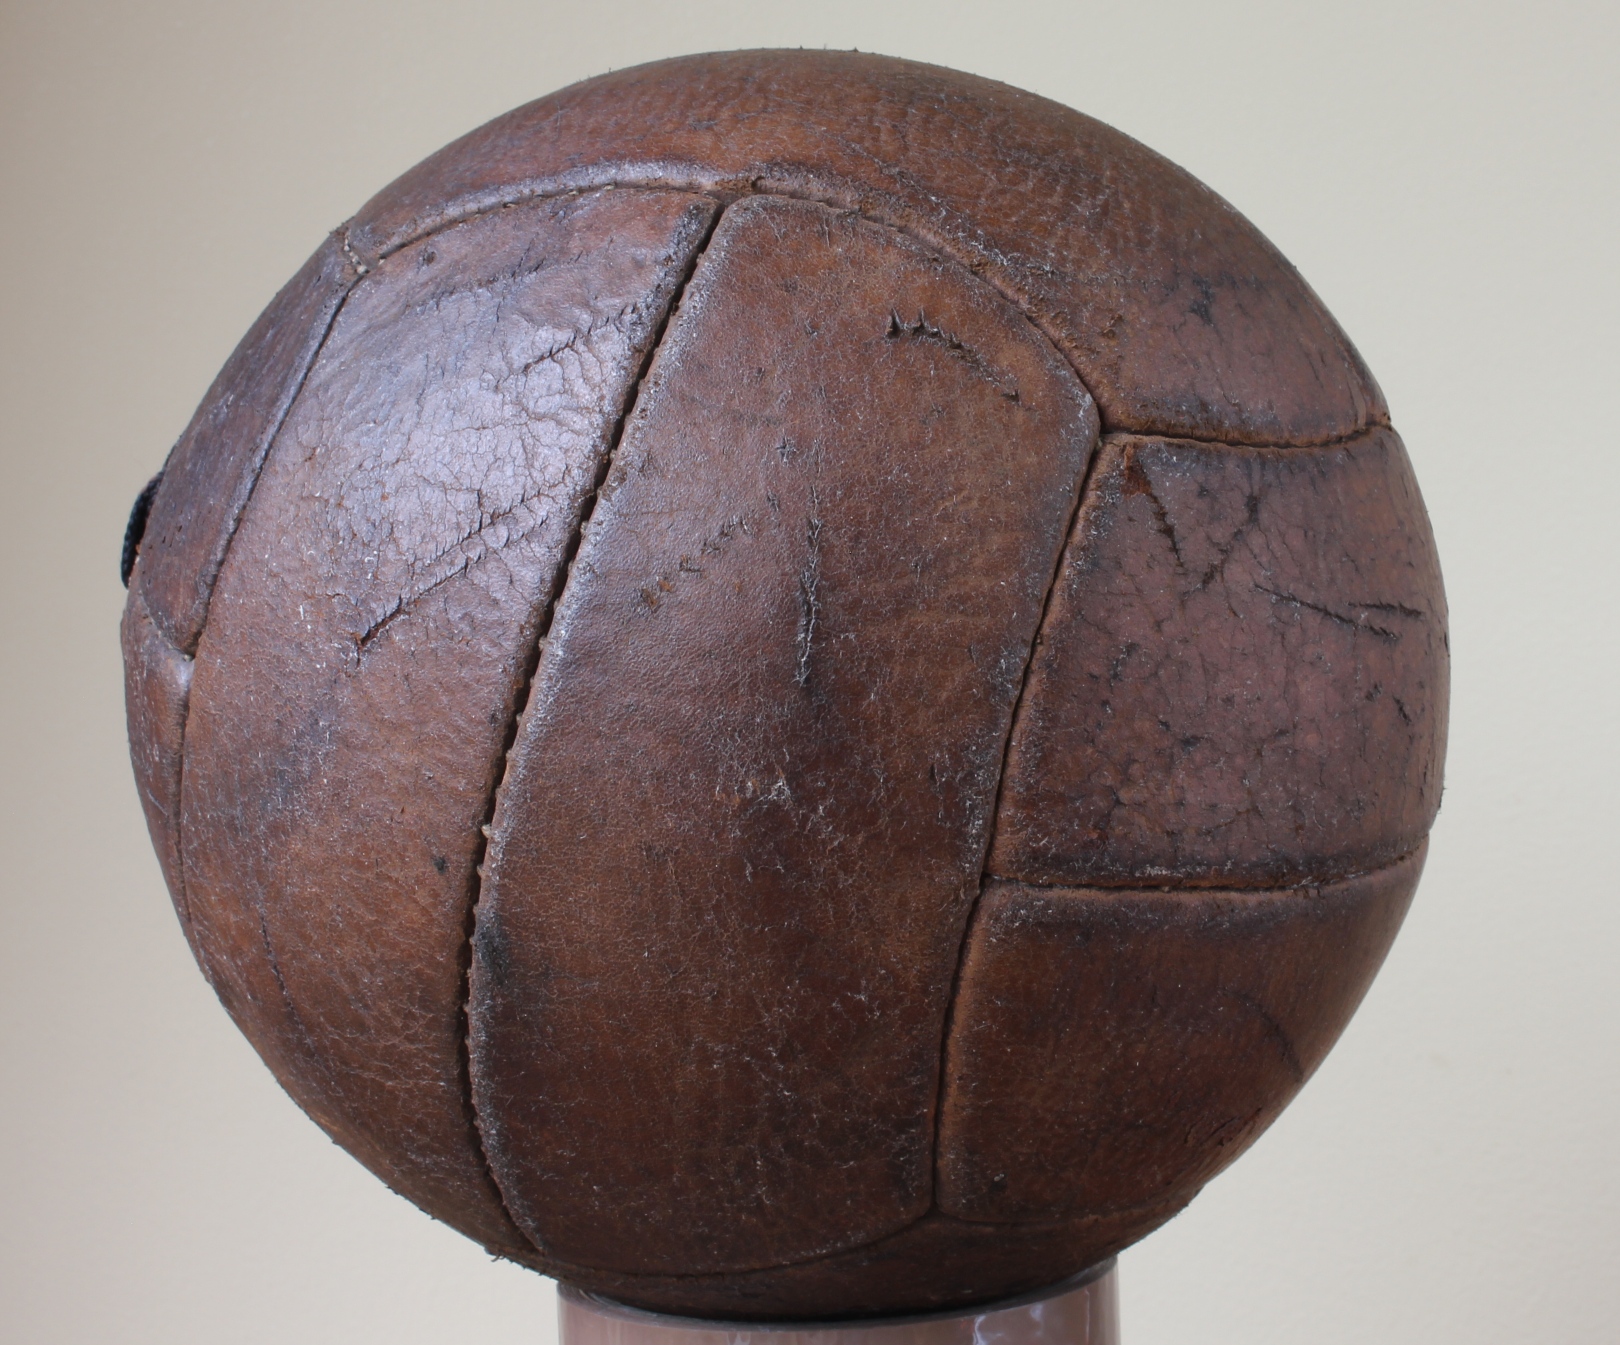 Vintage Leather Football 59